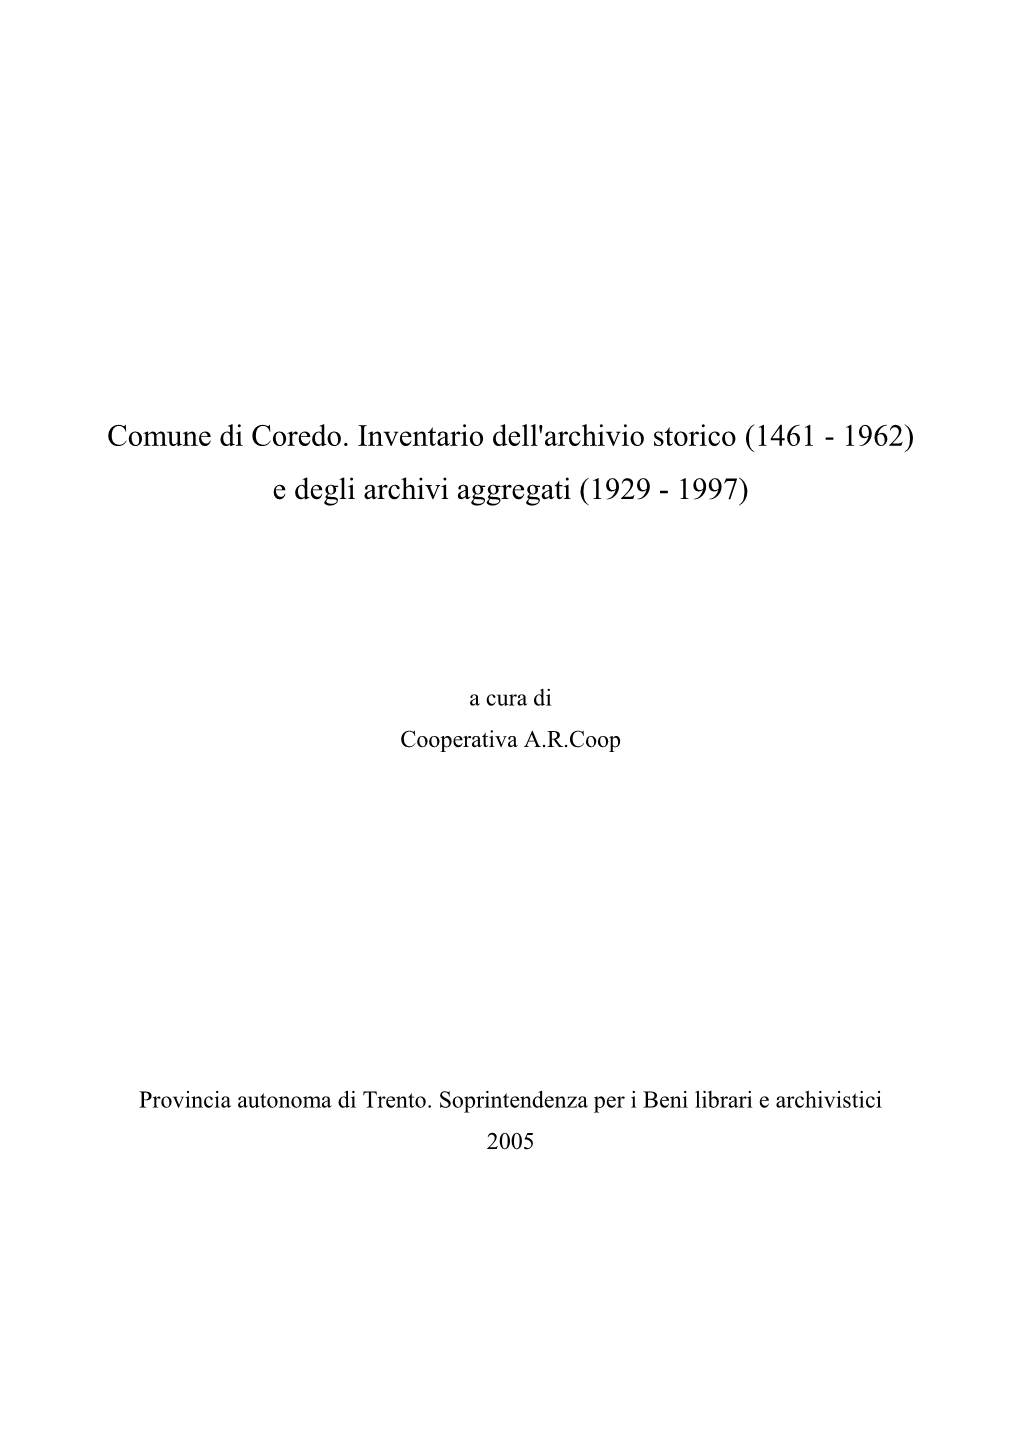 Comune Di Coredo. Inventario Dell'archivio Storico (1461 - 1962) E Degli Archivi Aggregati (1929 - 1997)